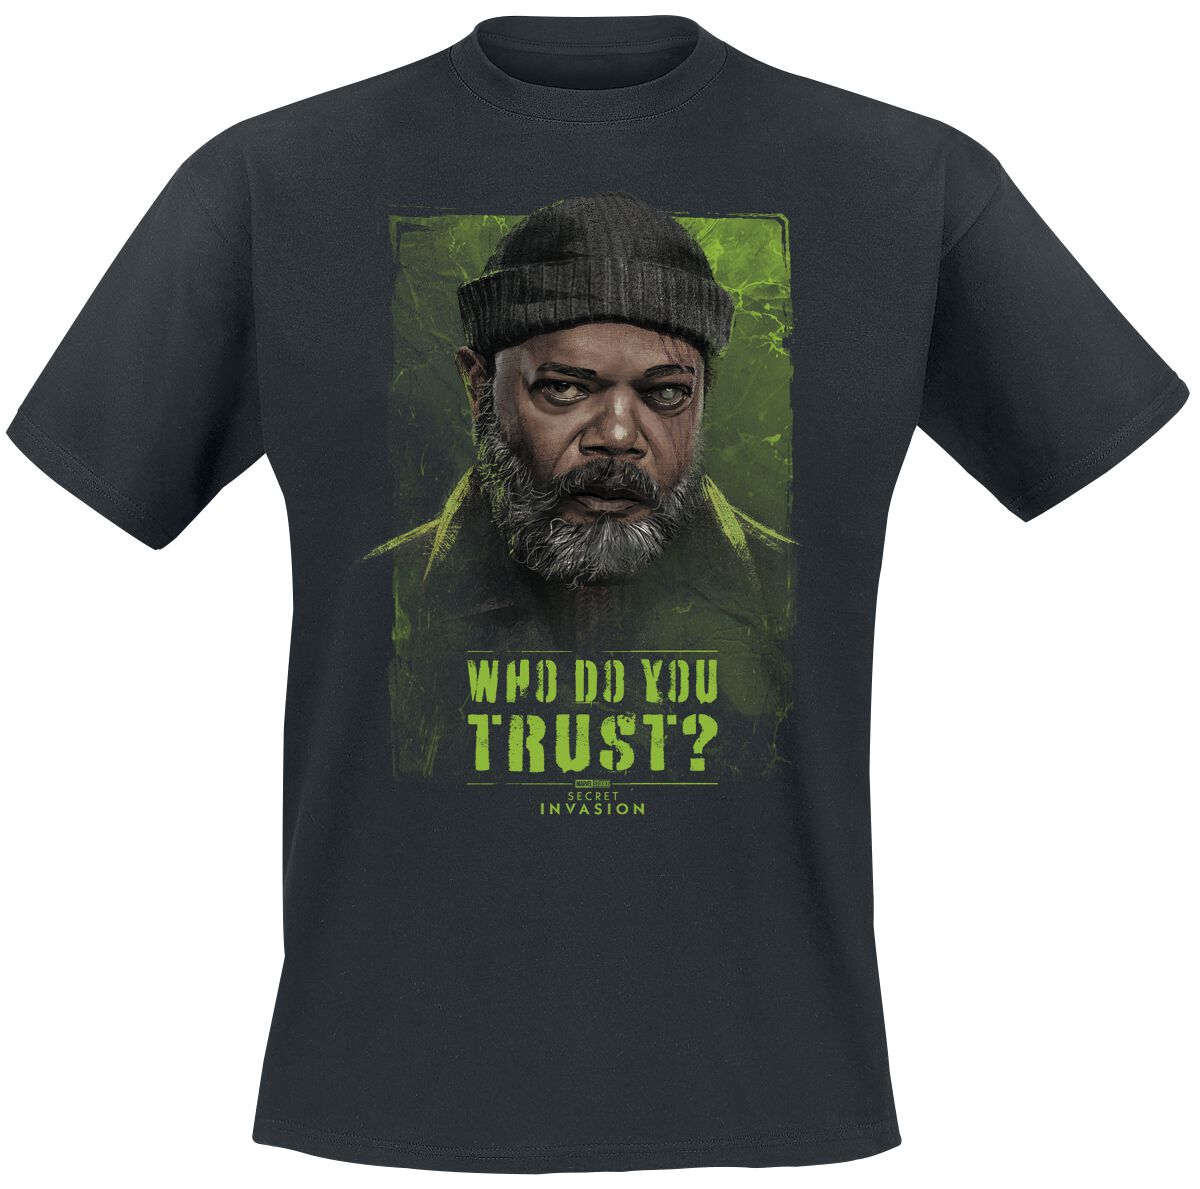 Secret Invasion - Marvel T-Shirt - Who Do You Trust? Nick Fury - S bis XXL - für Männer - Größe M - schwarz  - EMP exklusives Merchandise!